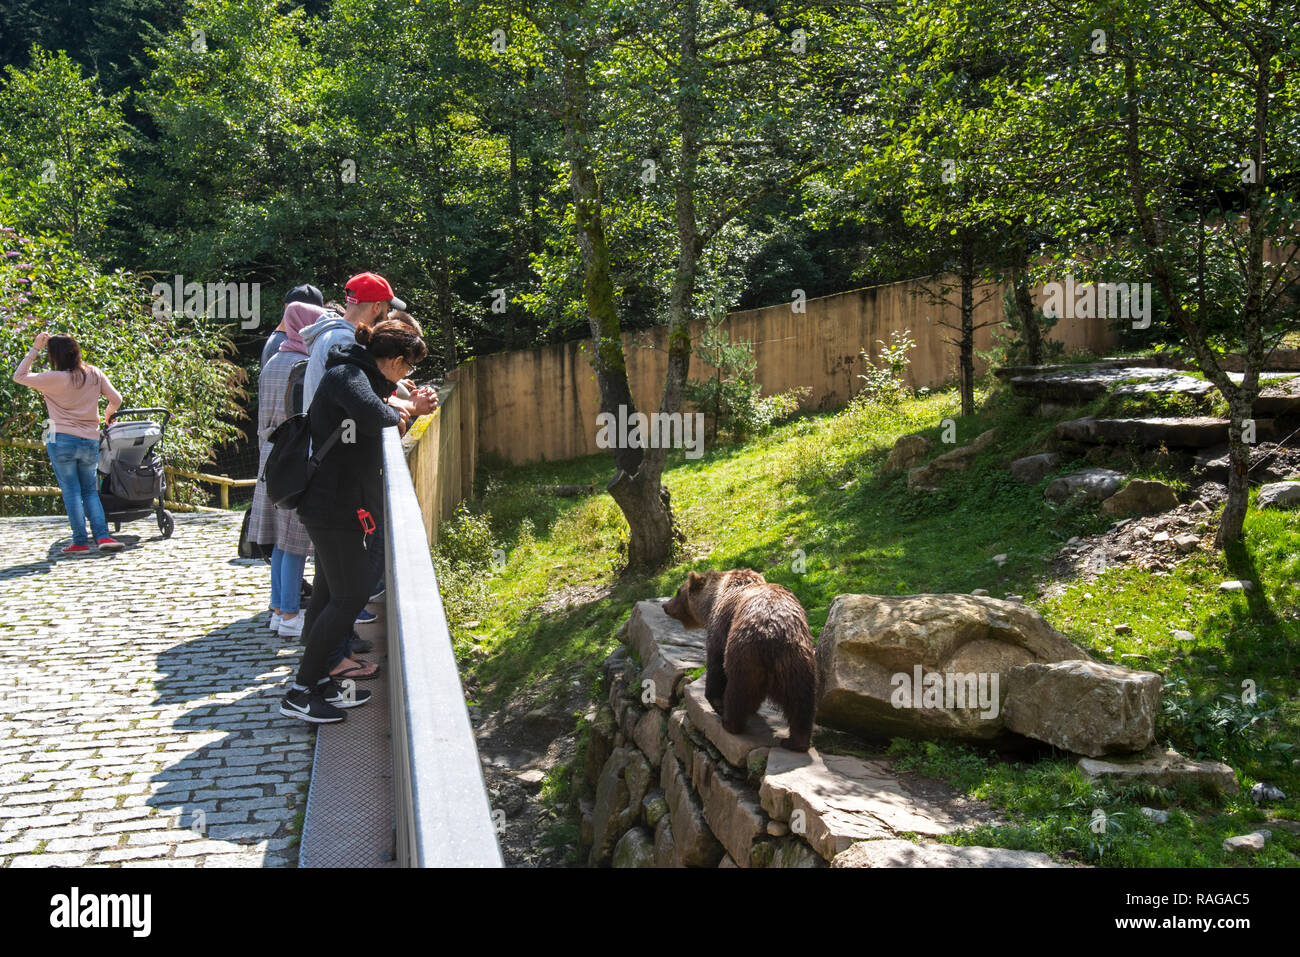 Visiteurs regardant l'ours brun en captivité dans un boîtier à l'Aran Park Zoo, parc animalier / Le jardin zoologique à Bossost, Lleida, Pyrénées, la Catalogne, Espagne Banque D'Images